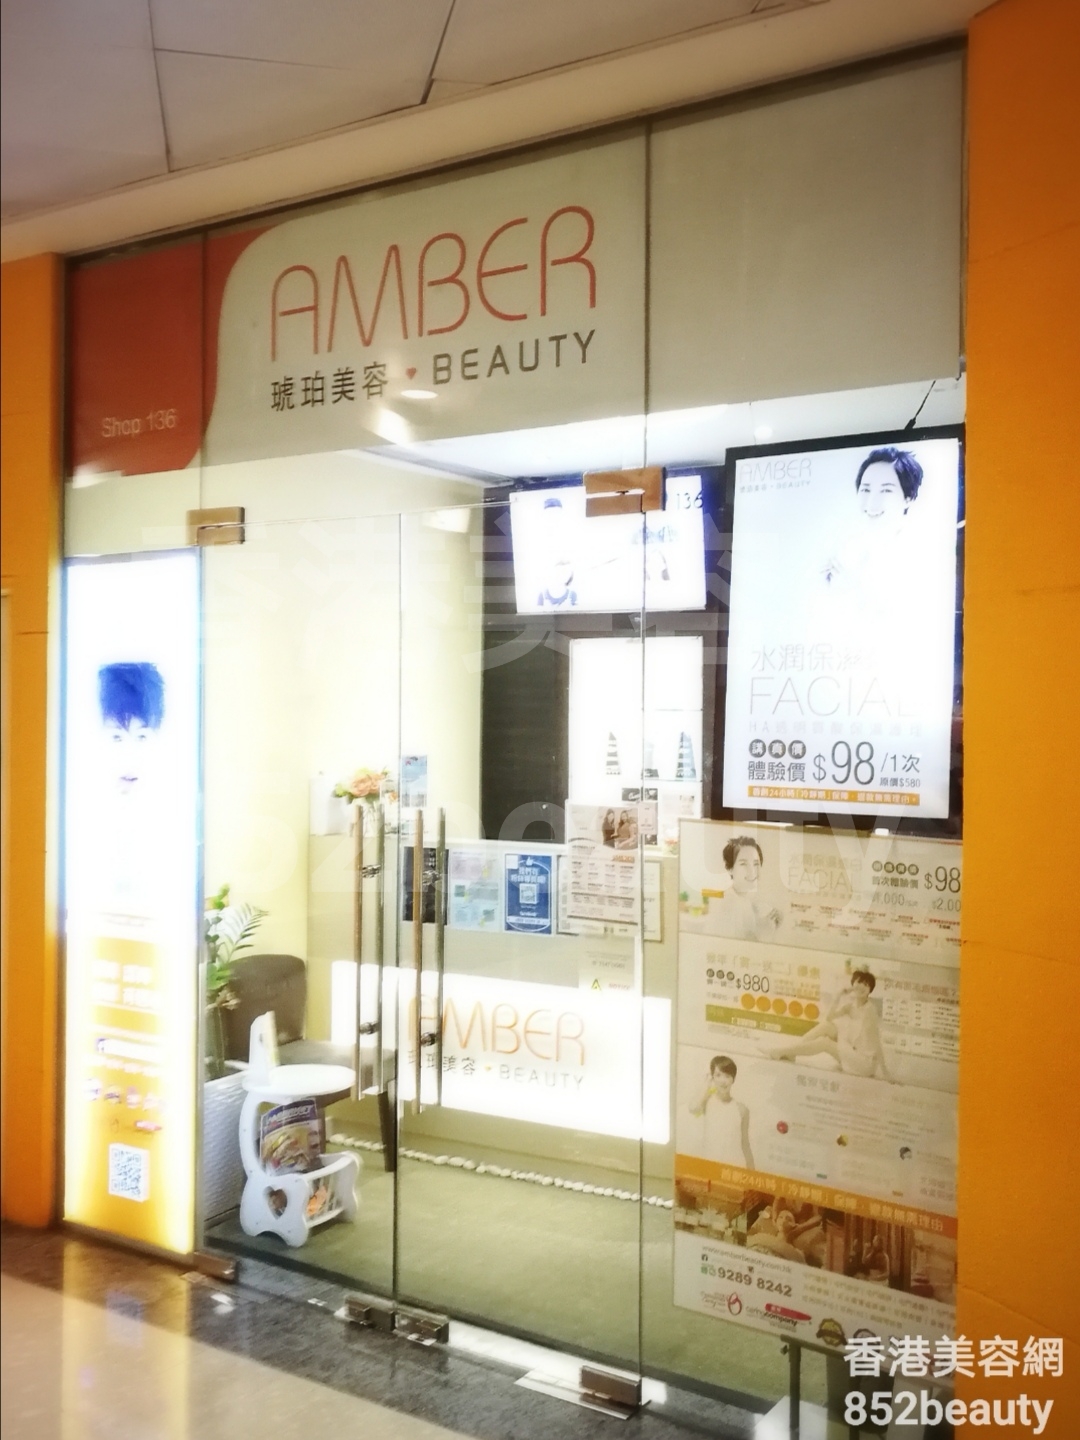 眼部護理: 琥珀美容 Amber Beauty (天水圍置富店)